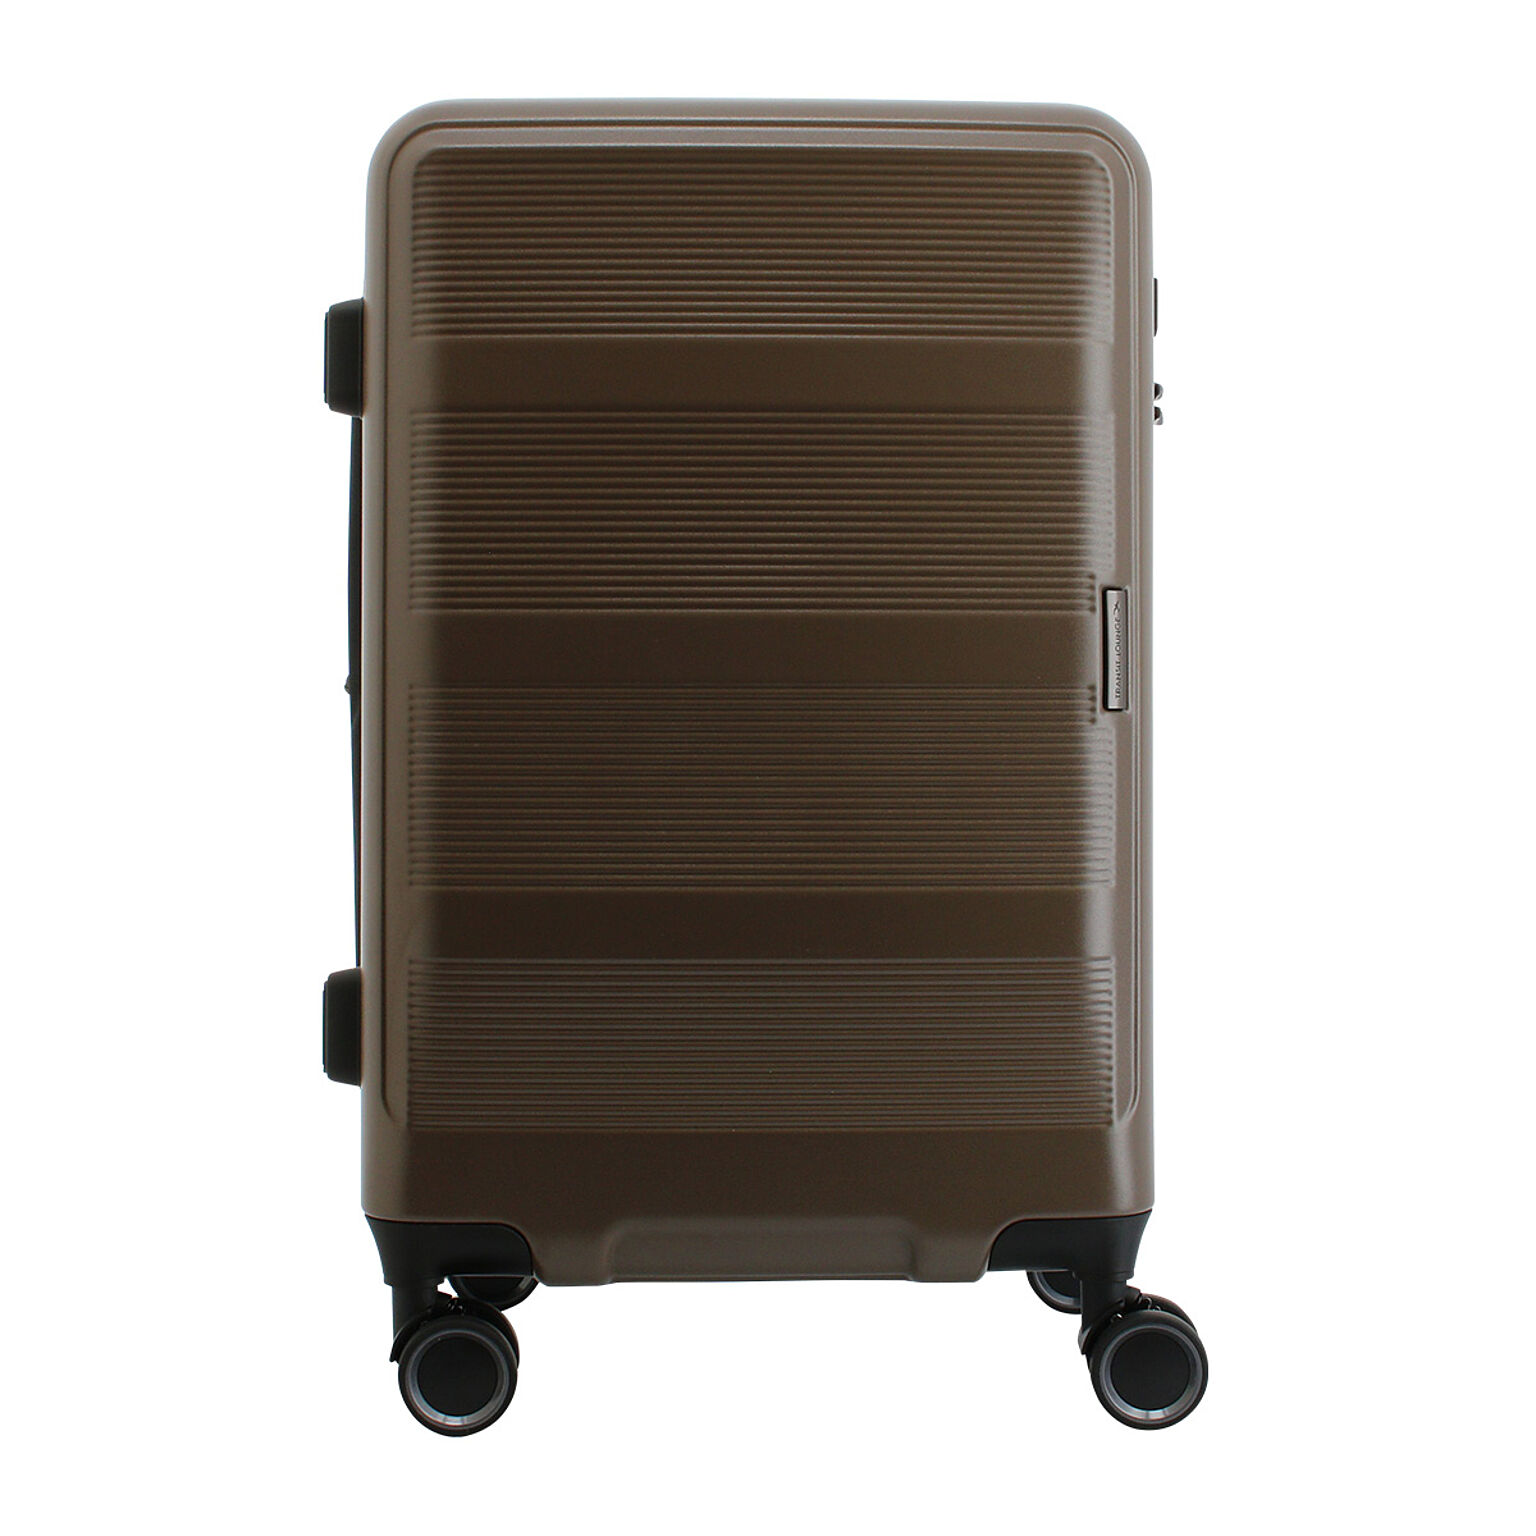 トランジットラウンジ スーツケース リップル 53(61)L 56cm 3.6kg20203 TRANSIT LOUNGE キャリーケース 拡張 エキスパンダブル